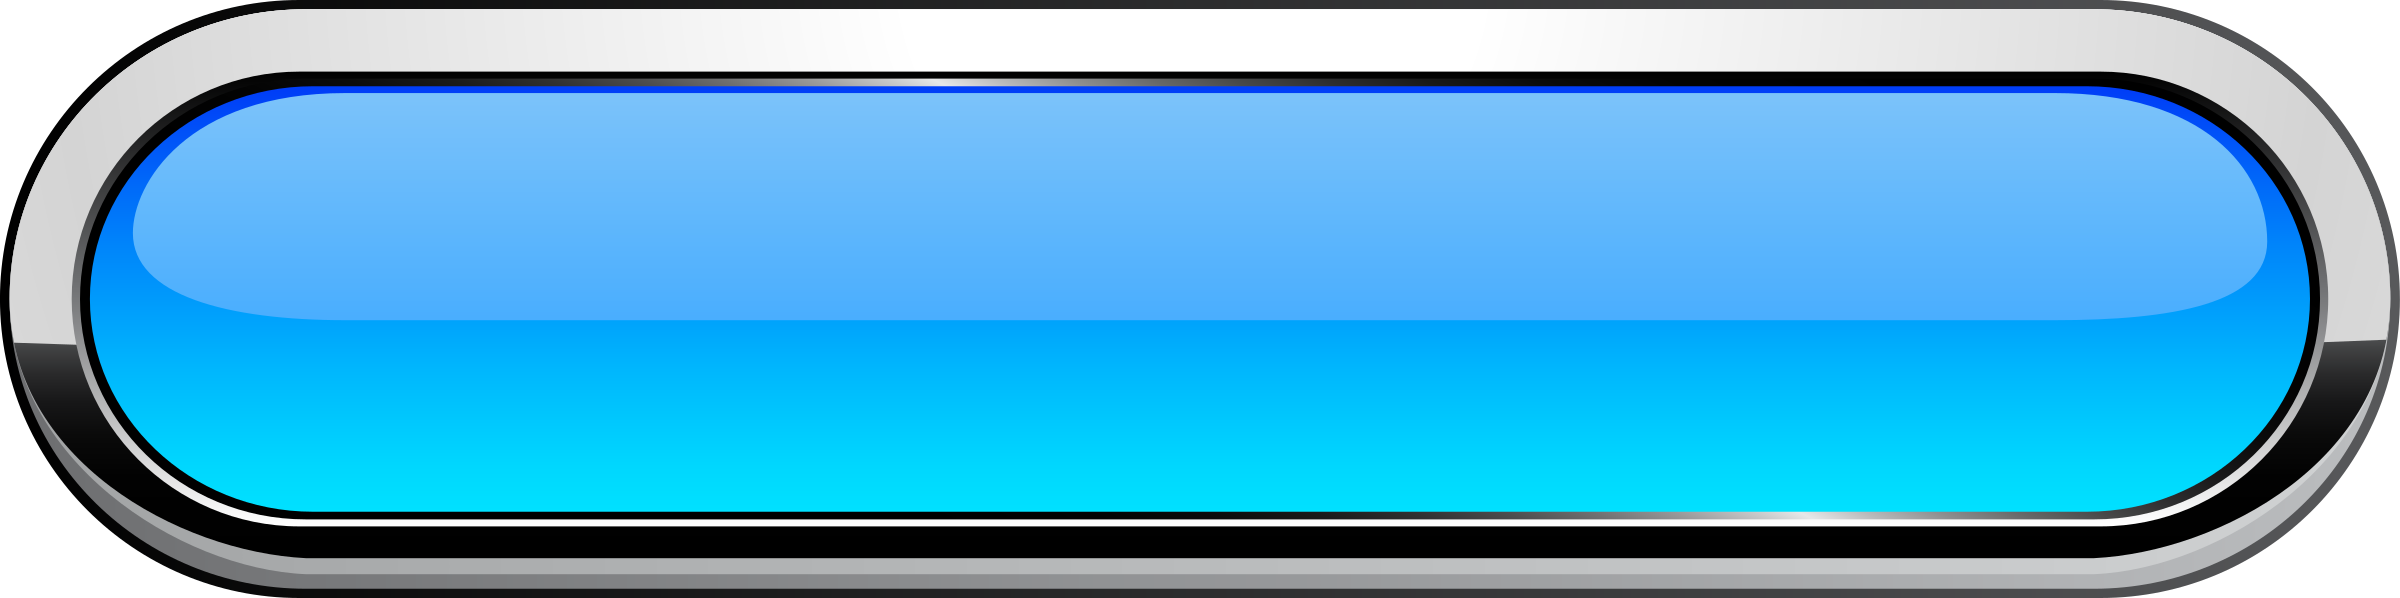 Blue Dials Joystick Button Folder PNG